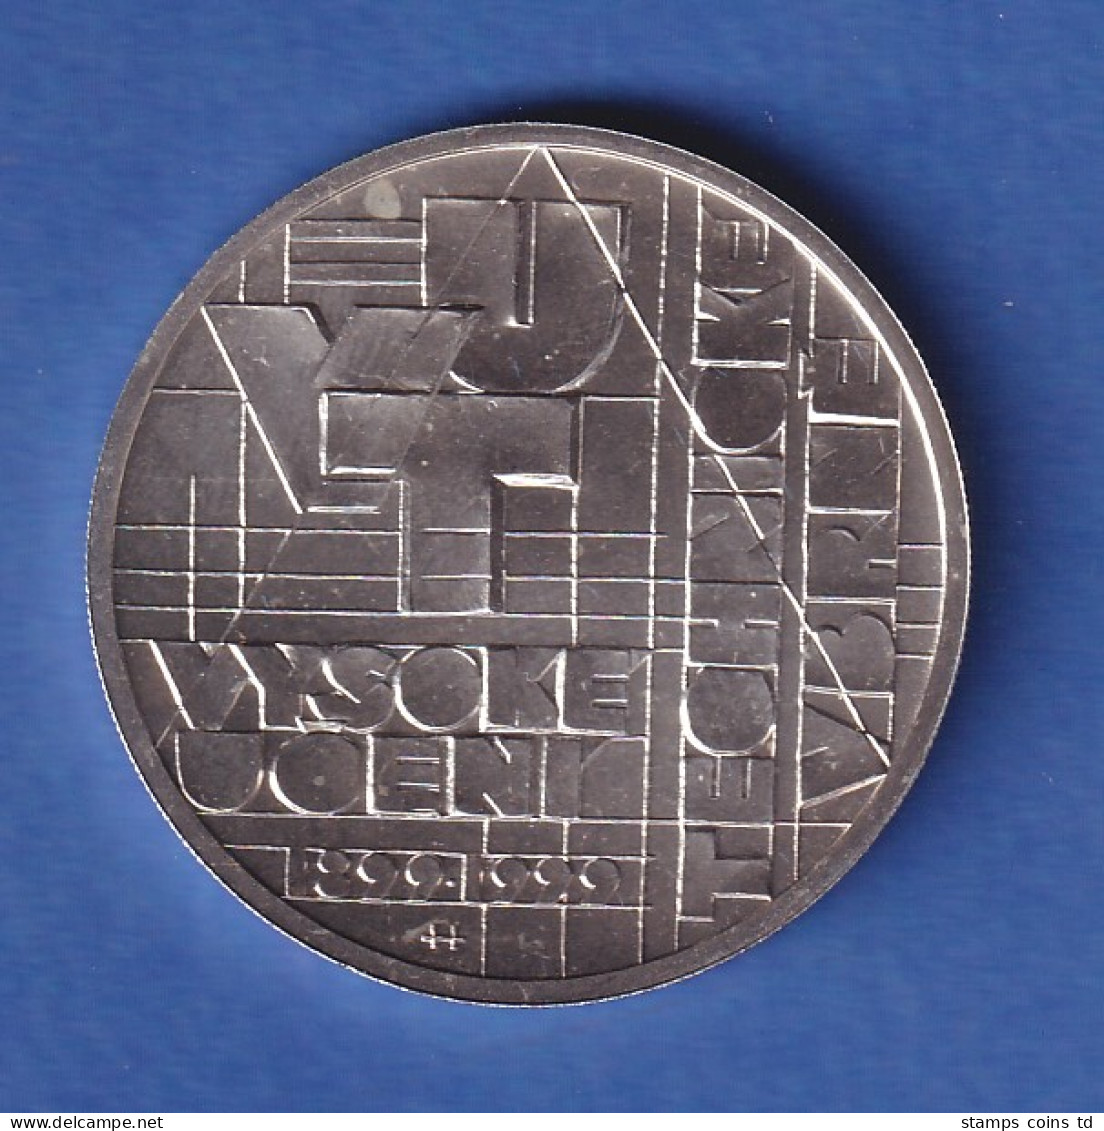 Tschechien 1999 Silbermünze 200 Kronen 100 Jahre Technische Universität Brünn St - Tschechische Rep.